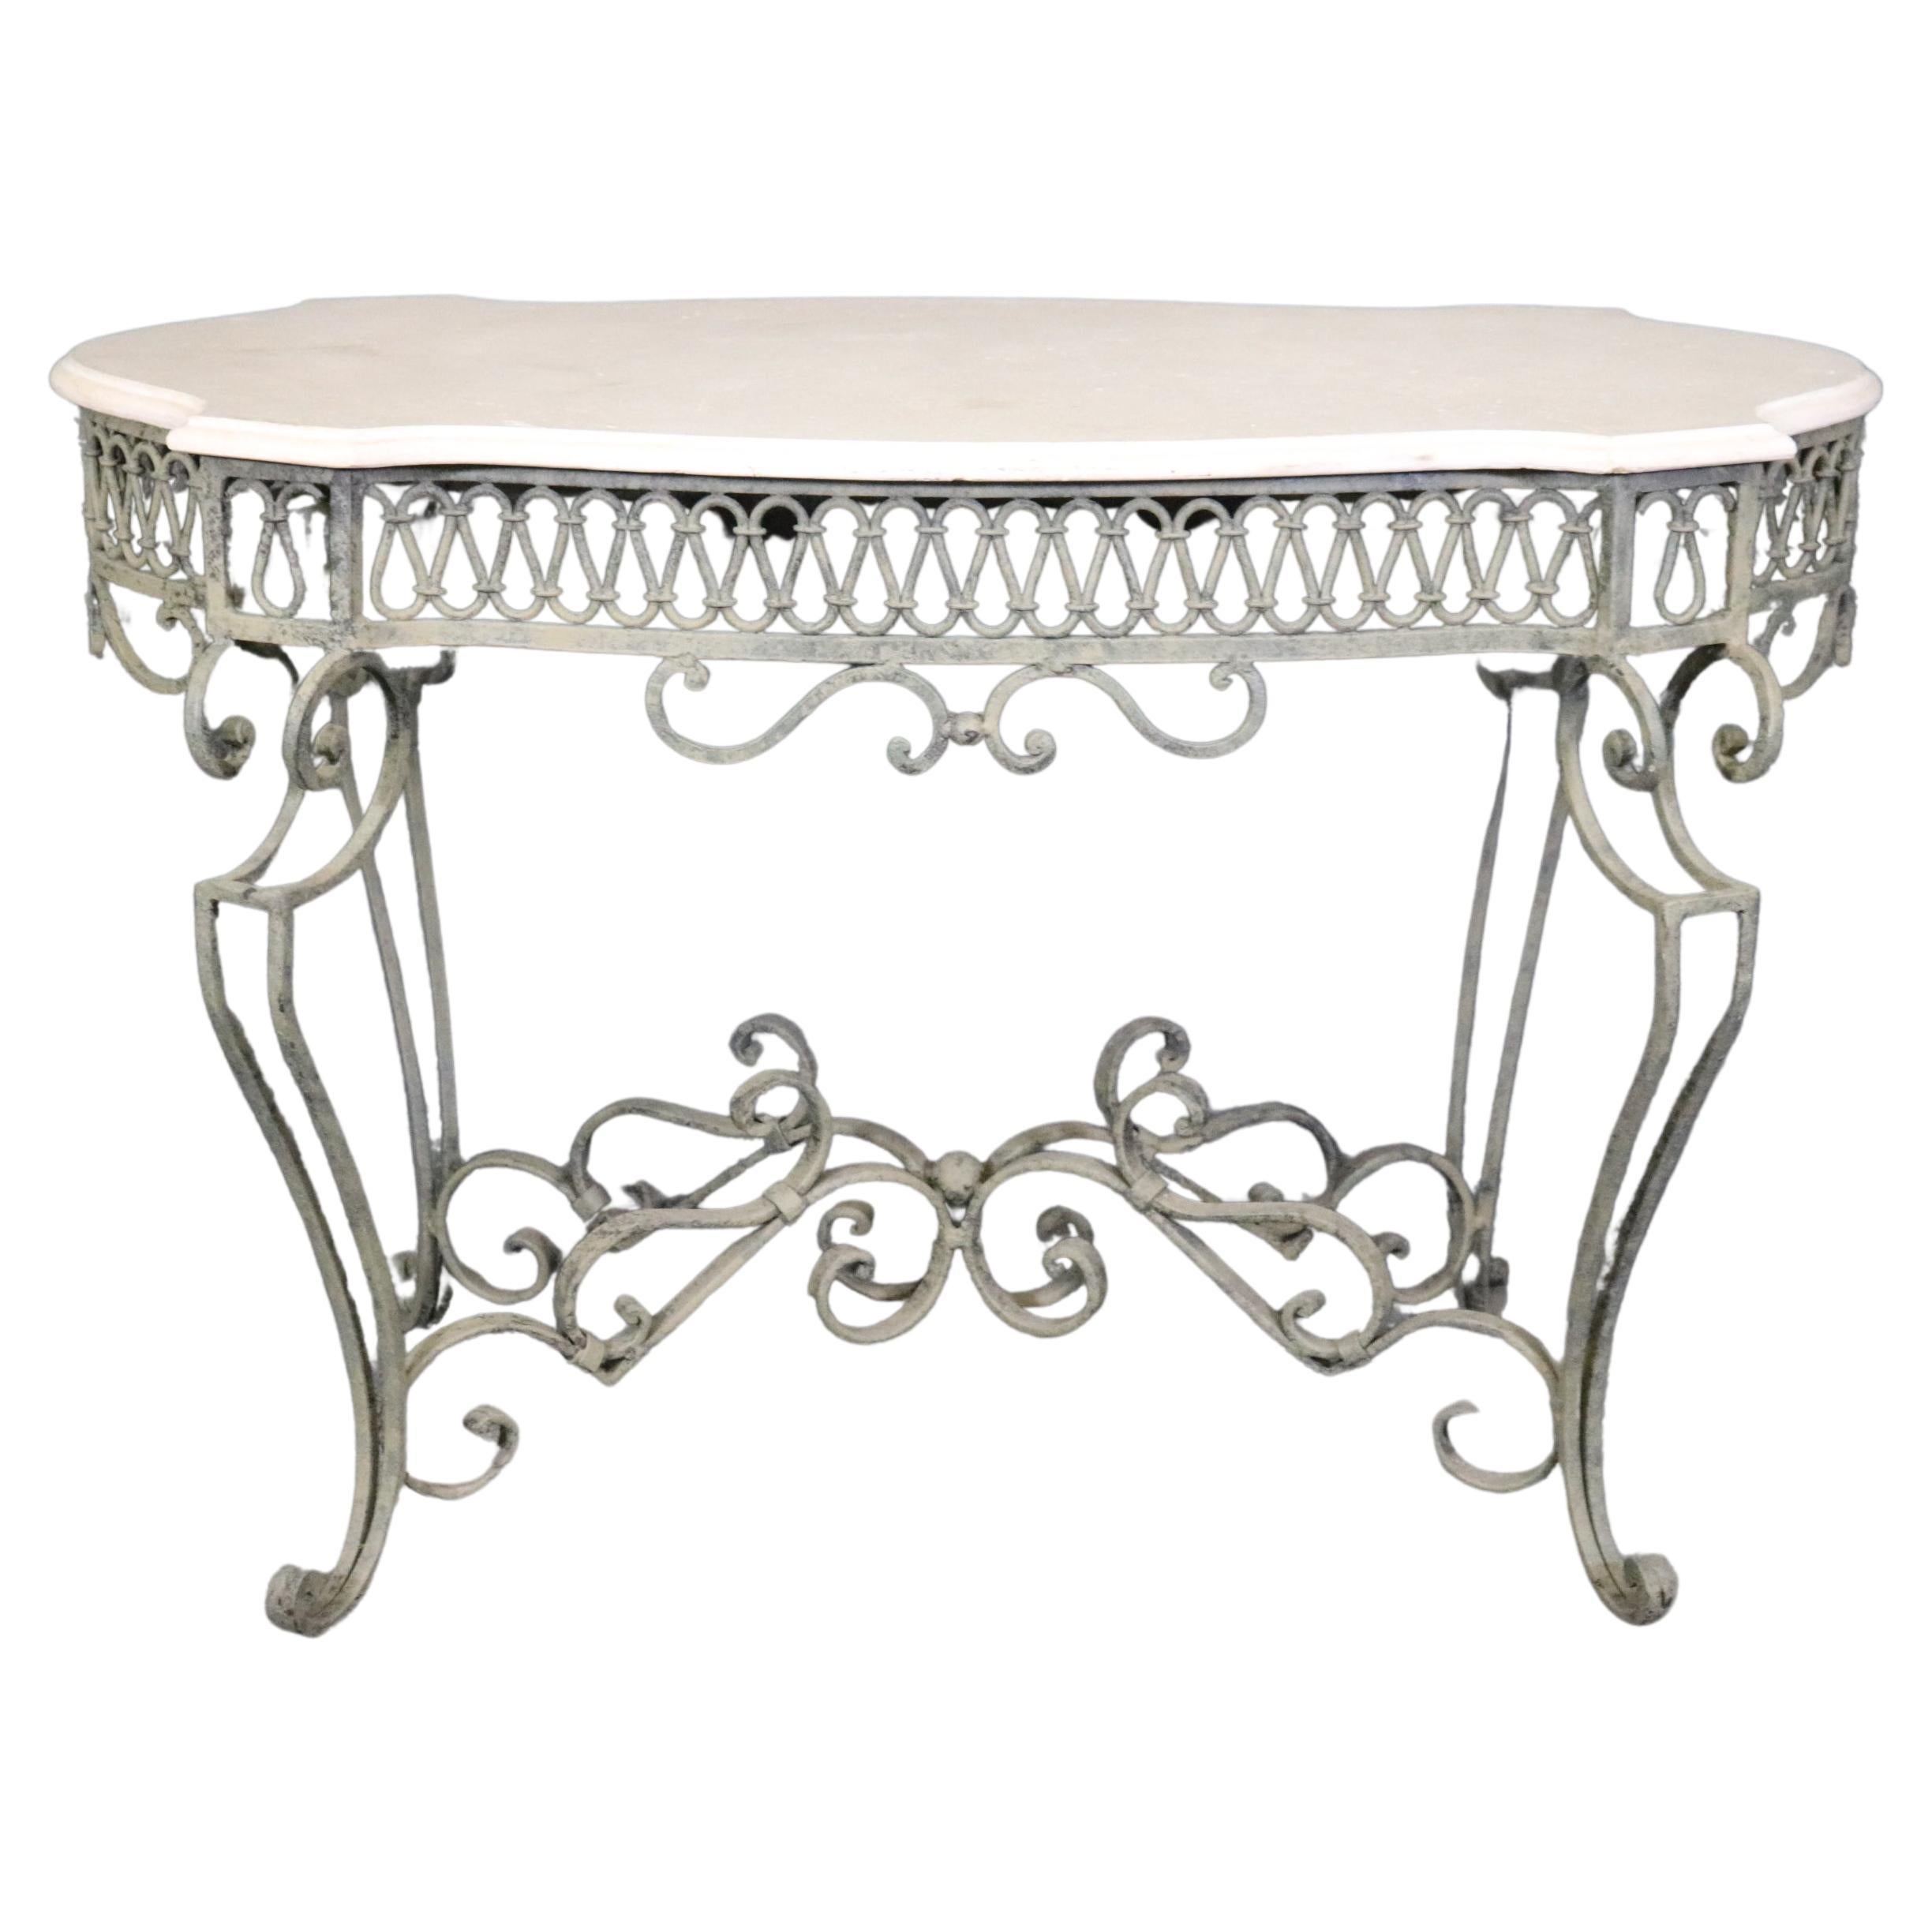 Table centrale en fer forgé de style Régence avec plateau en travertin